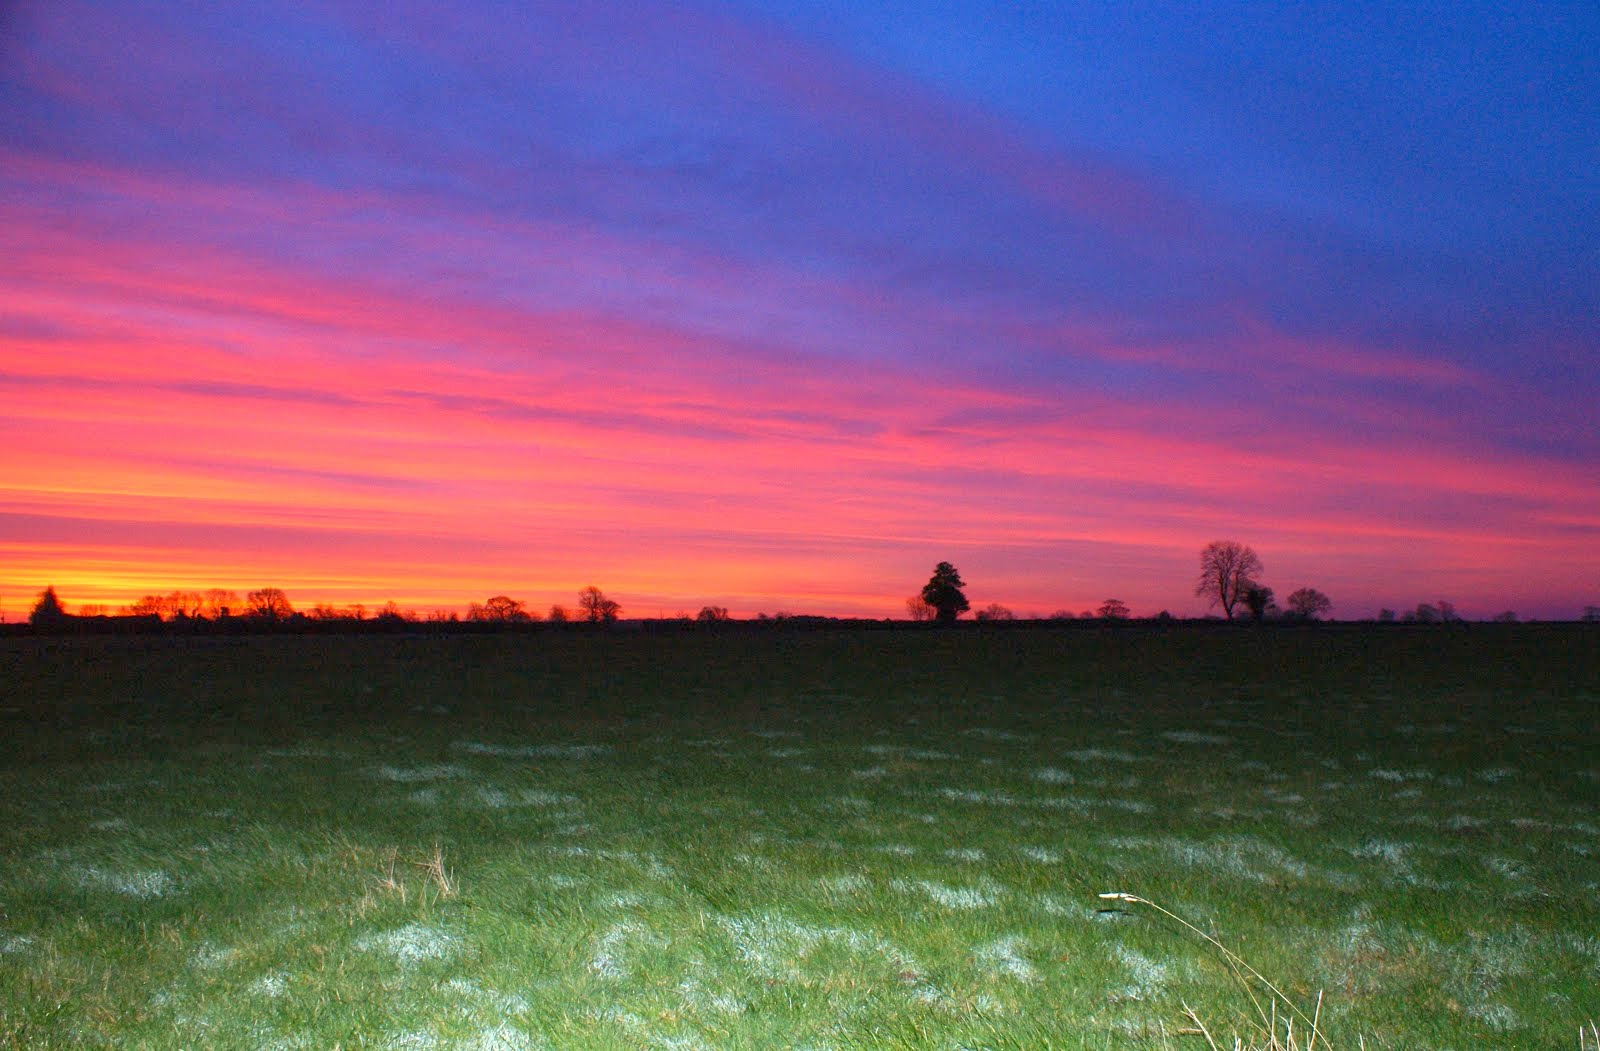 Sunrise at Le Grys Farm